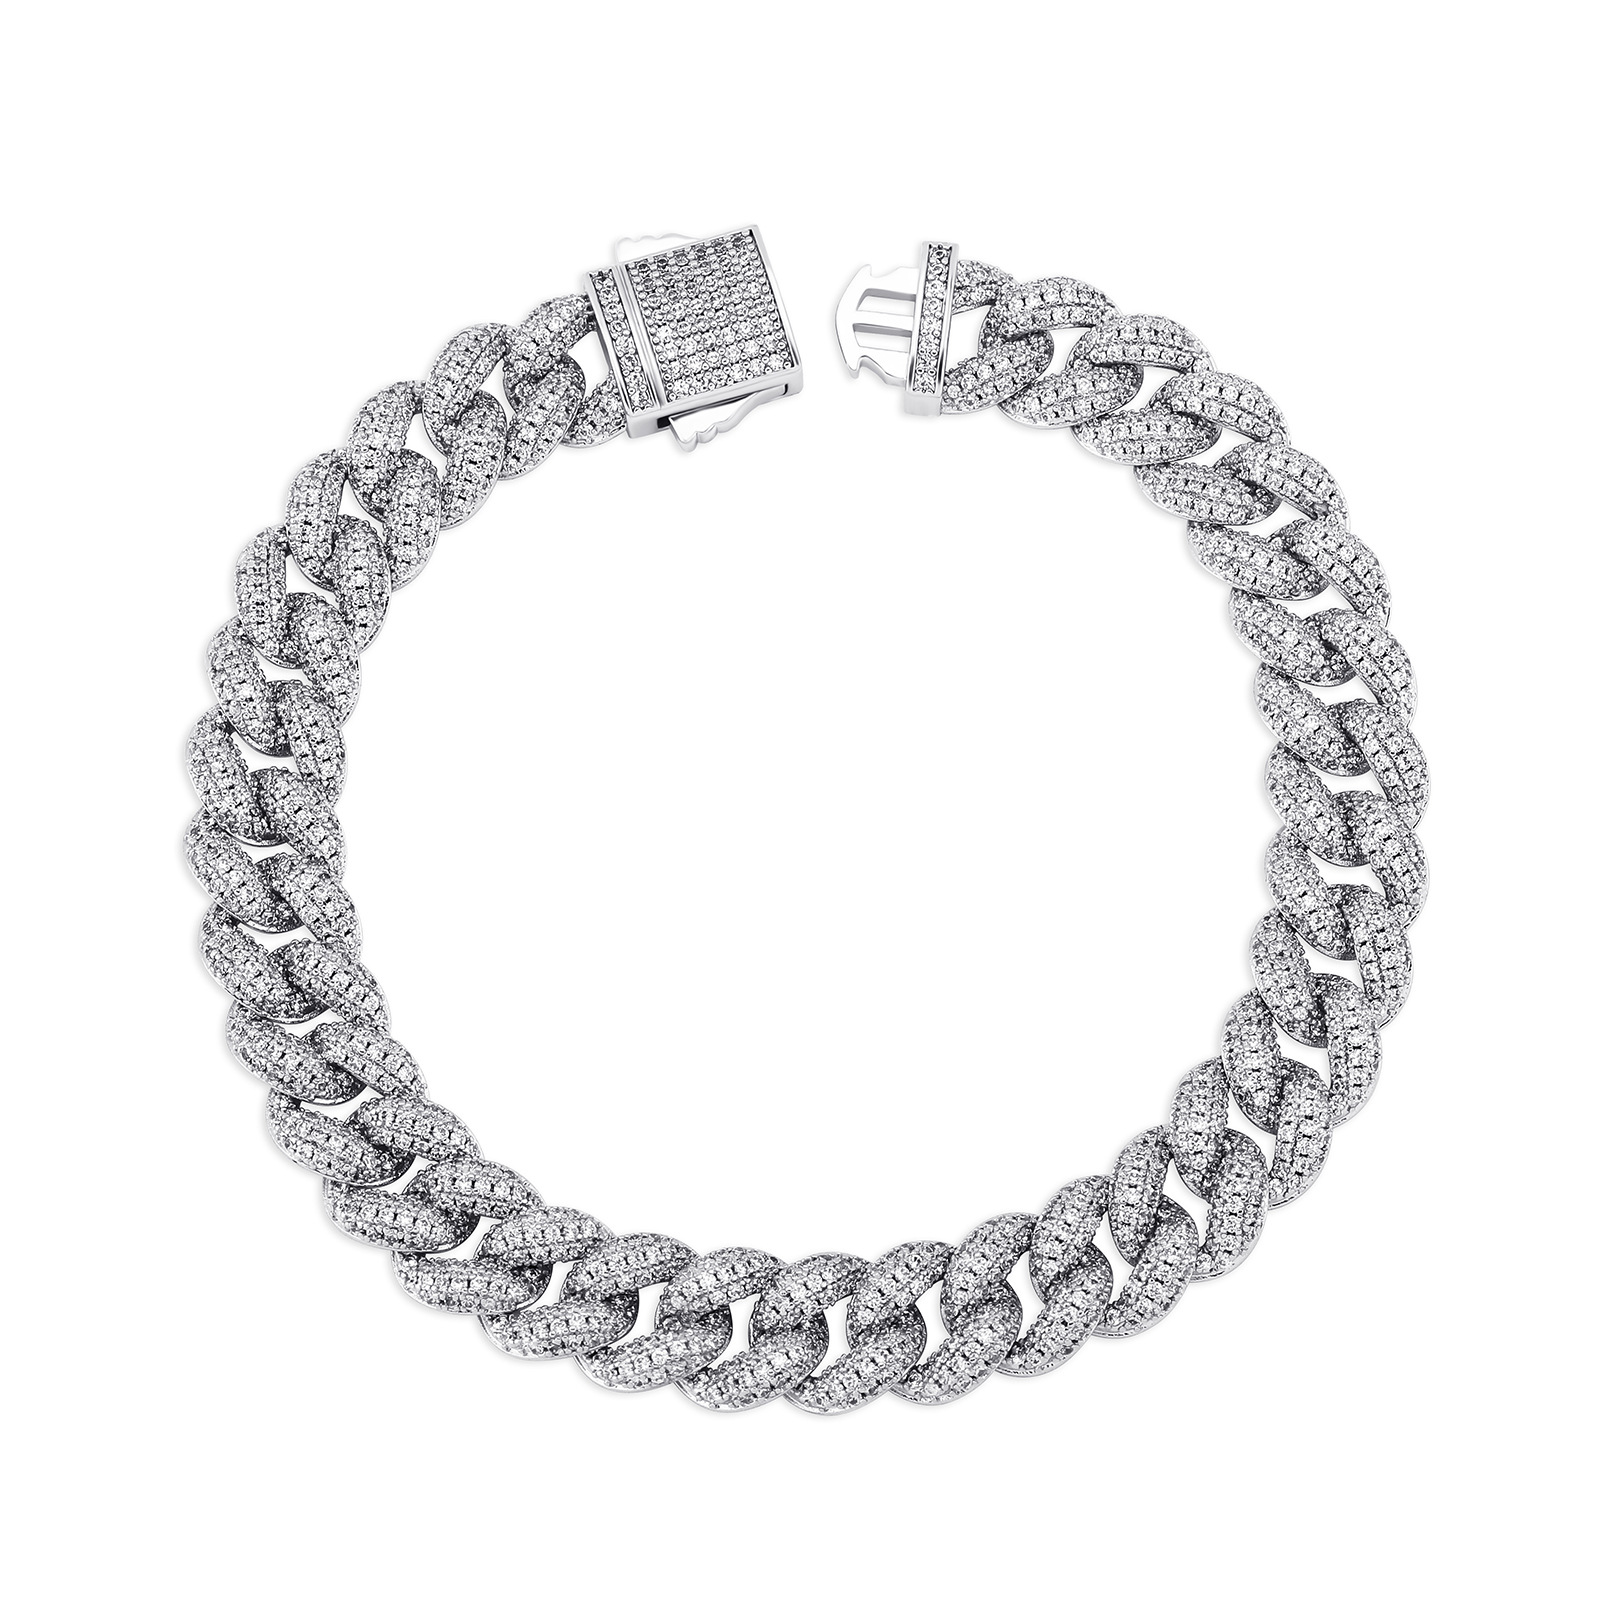 7:Bracelet silver 7 inch